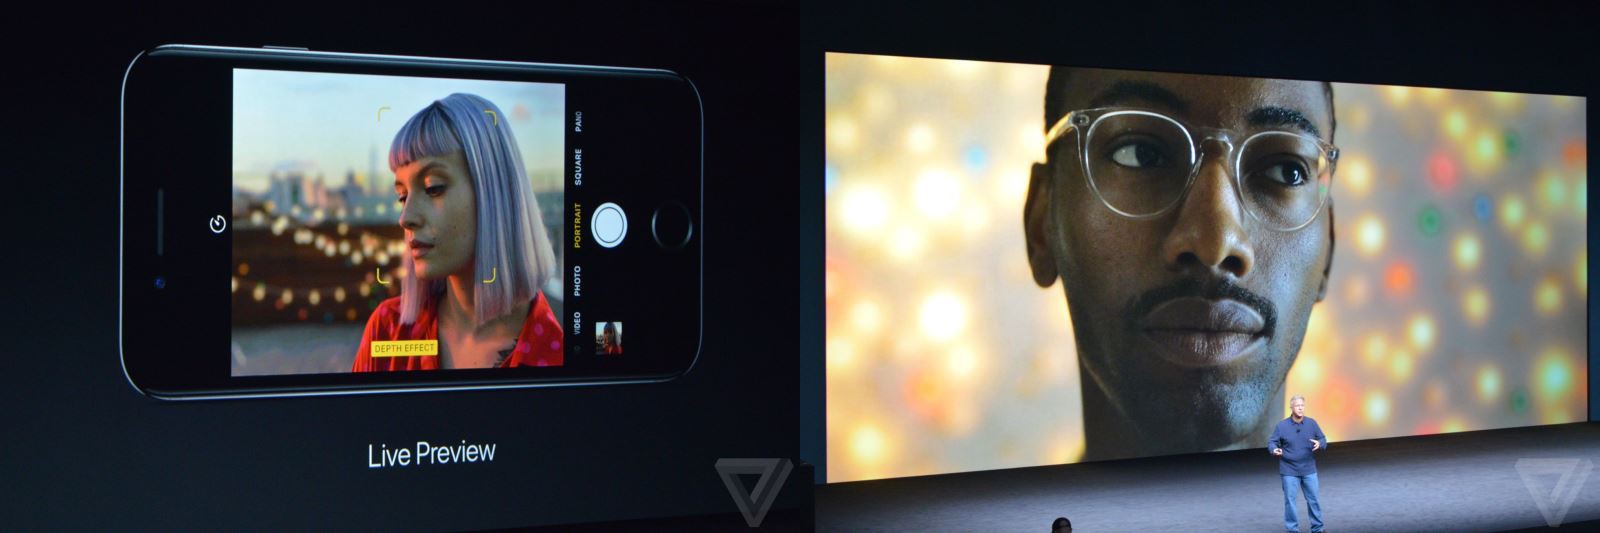 Camera kép trên iPhone 7 Plus có khả năng giả lập độ sâu trường ảnh